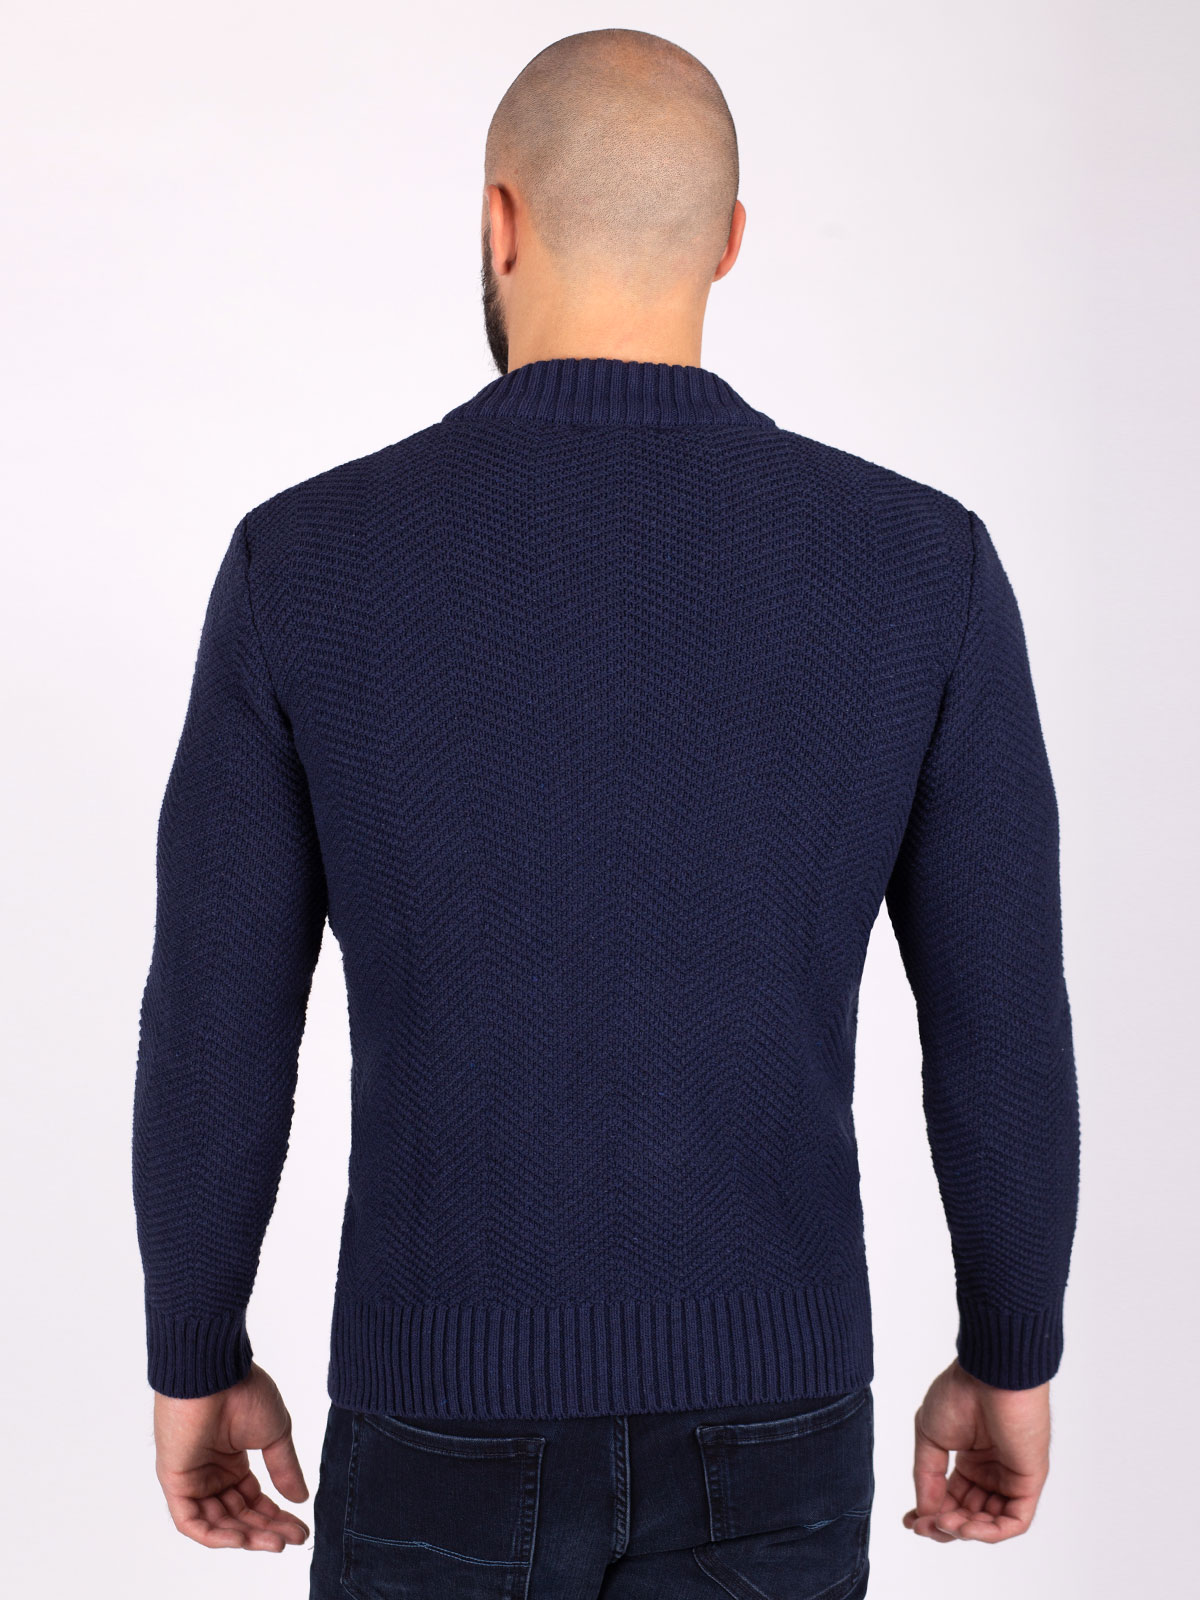 Cardigan cu un tricot mare în albastru î - 28110 € 61.30 img4